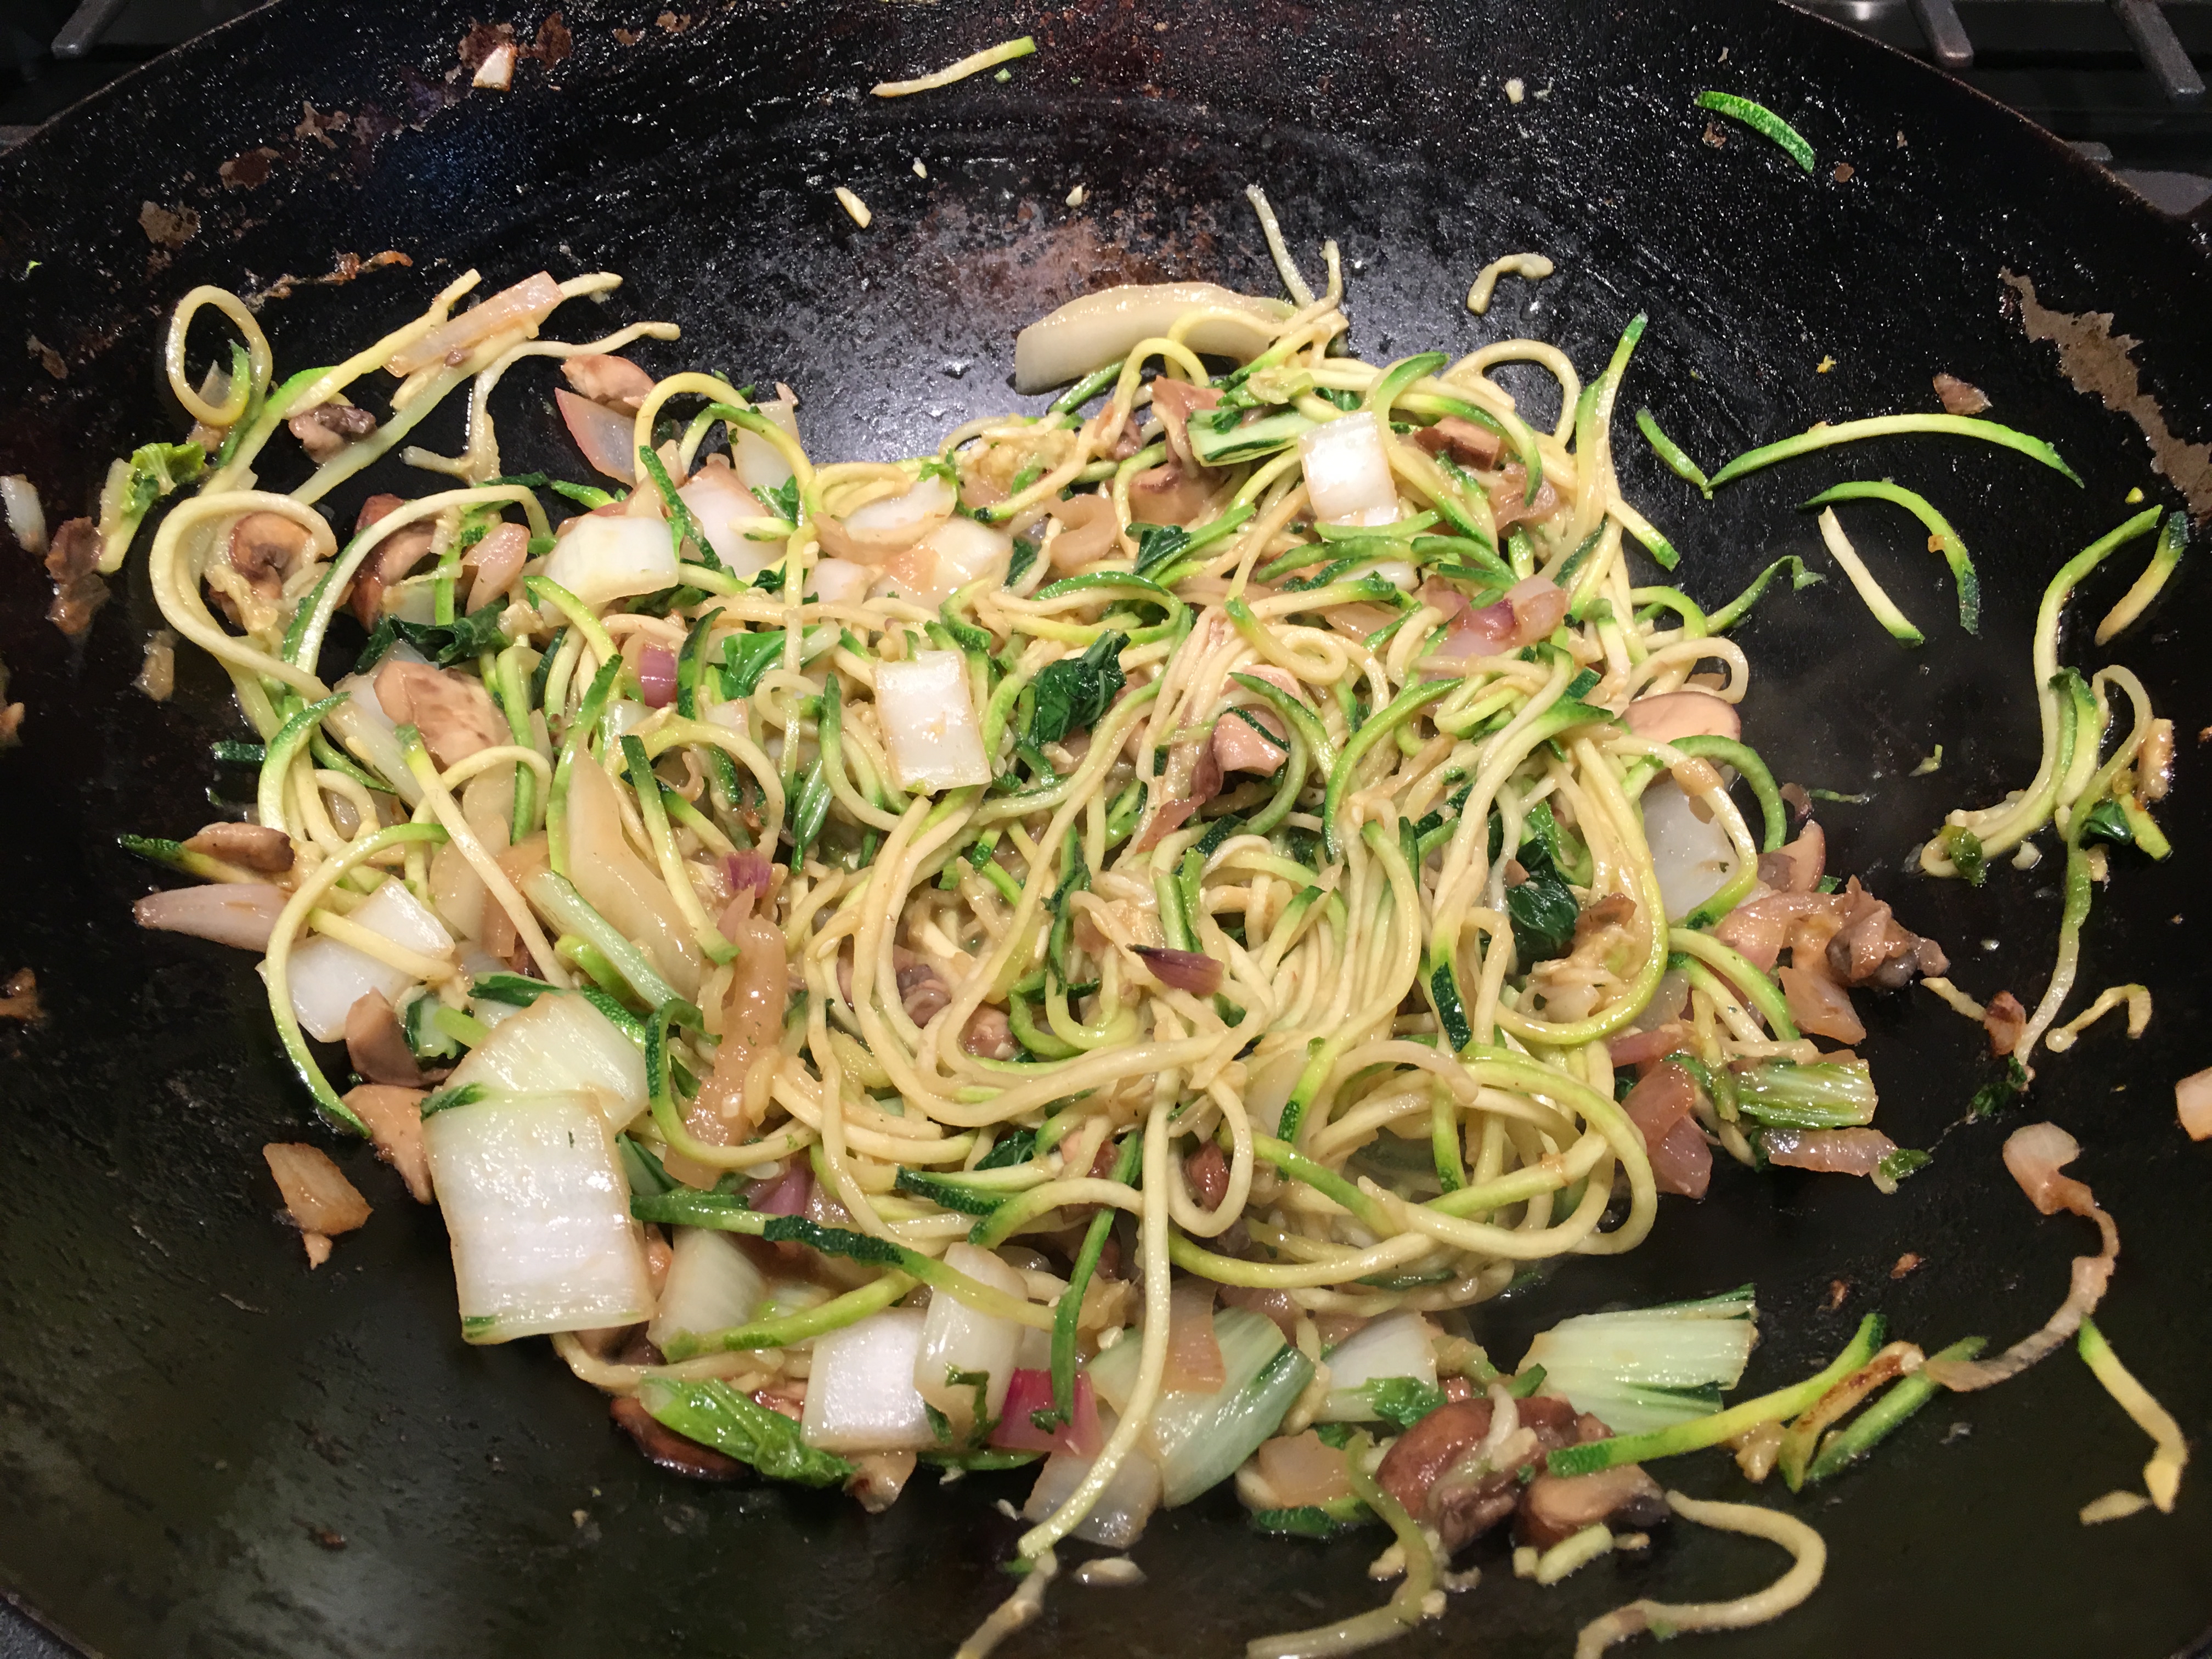 tuna stir fry- add the zuchcinni noodles